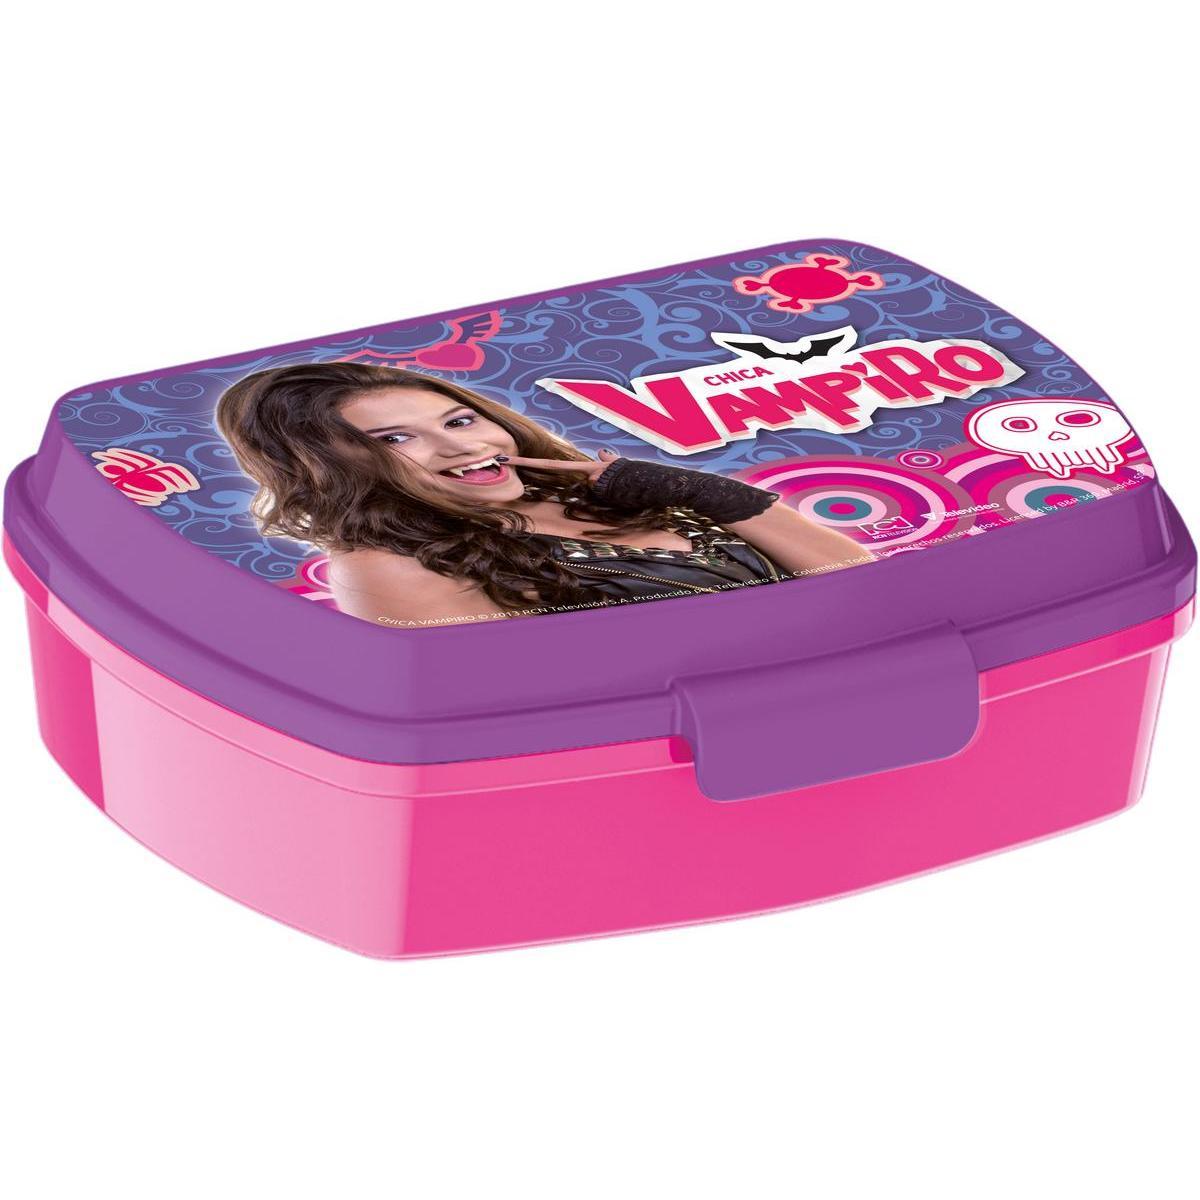 Lunch box Chica Vampiro - Plastique - 17 x 14 x H 5,5 cm - Multicolore